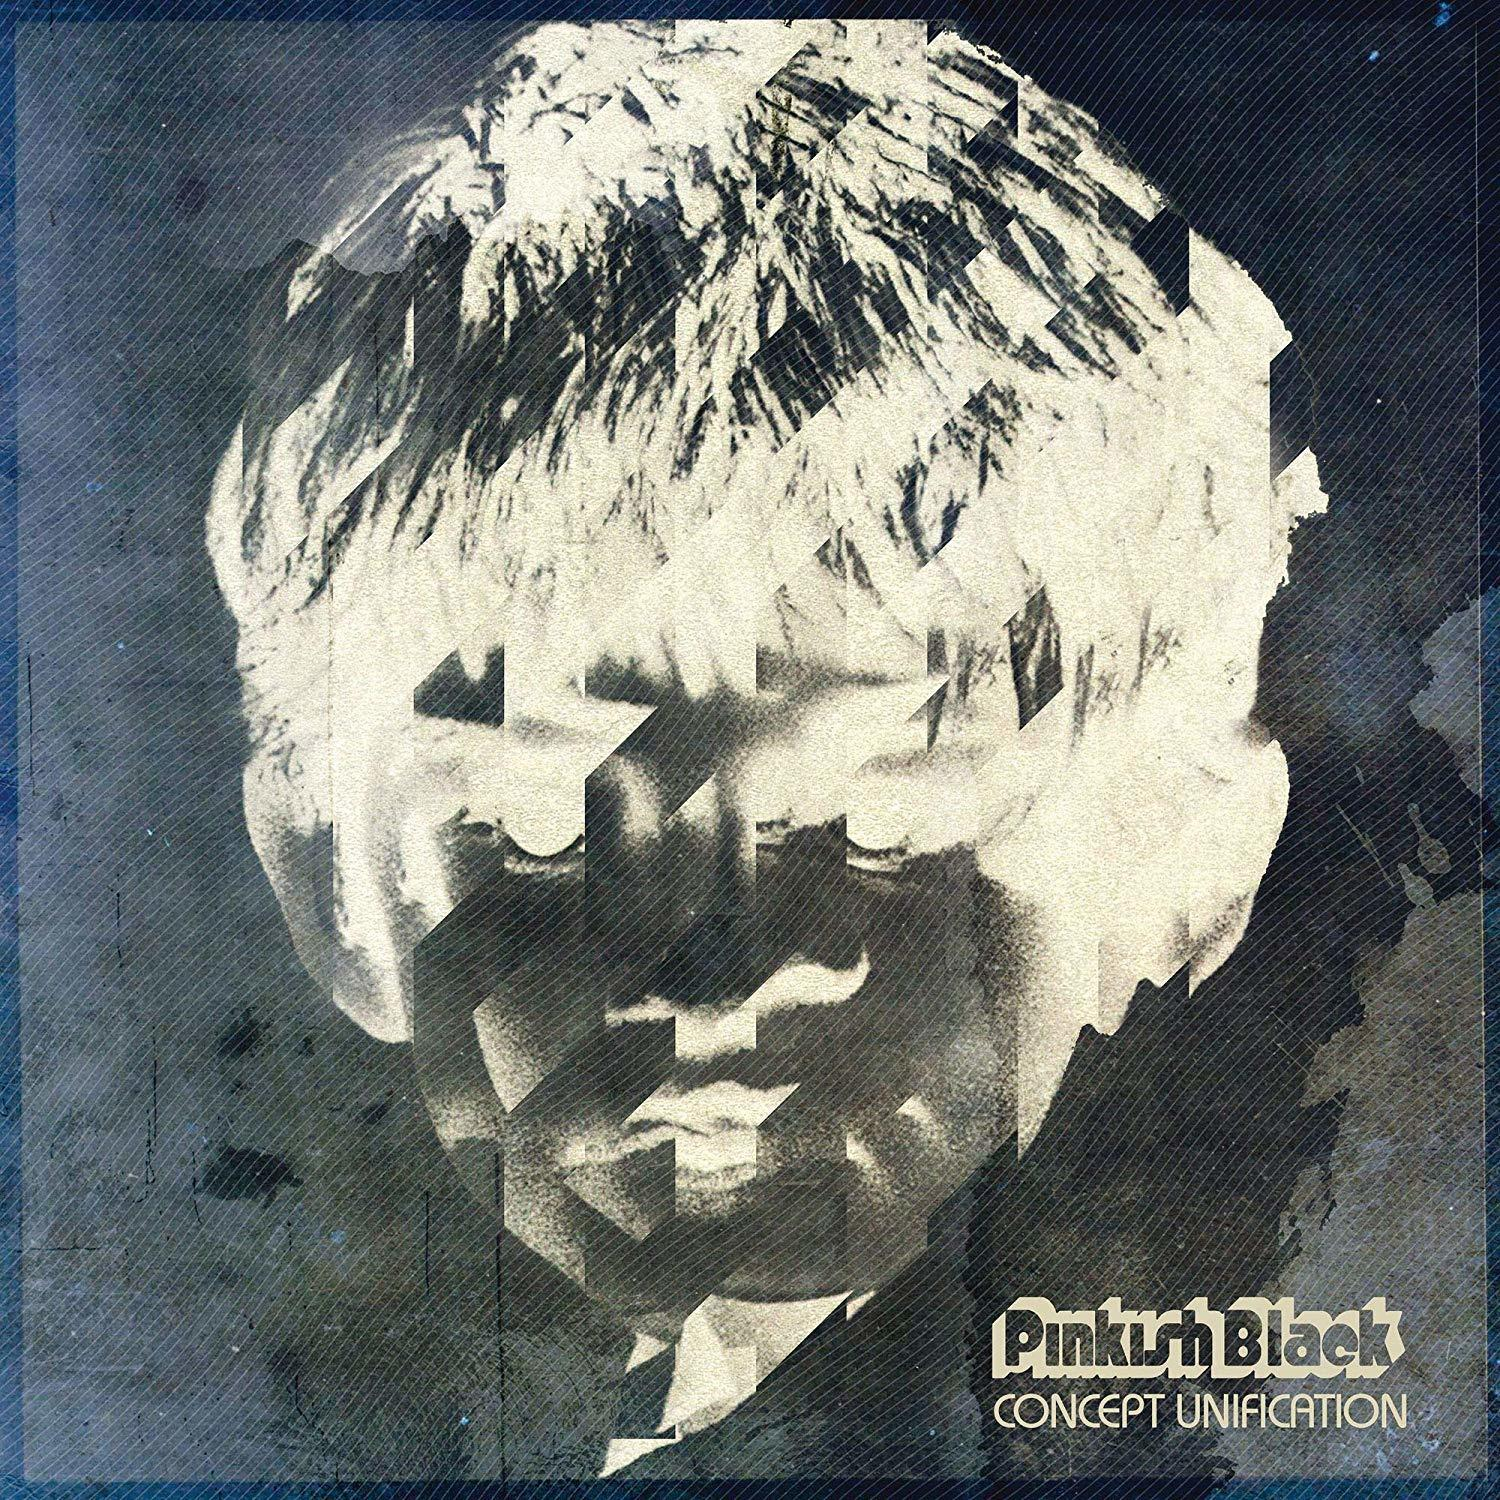 - (Vinyl) Pinkish Concept (LP+MP3) Unification - Black